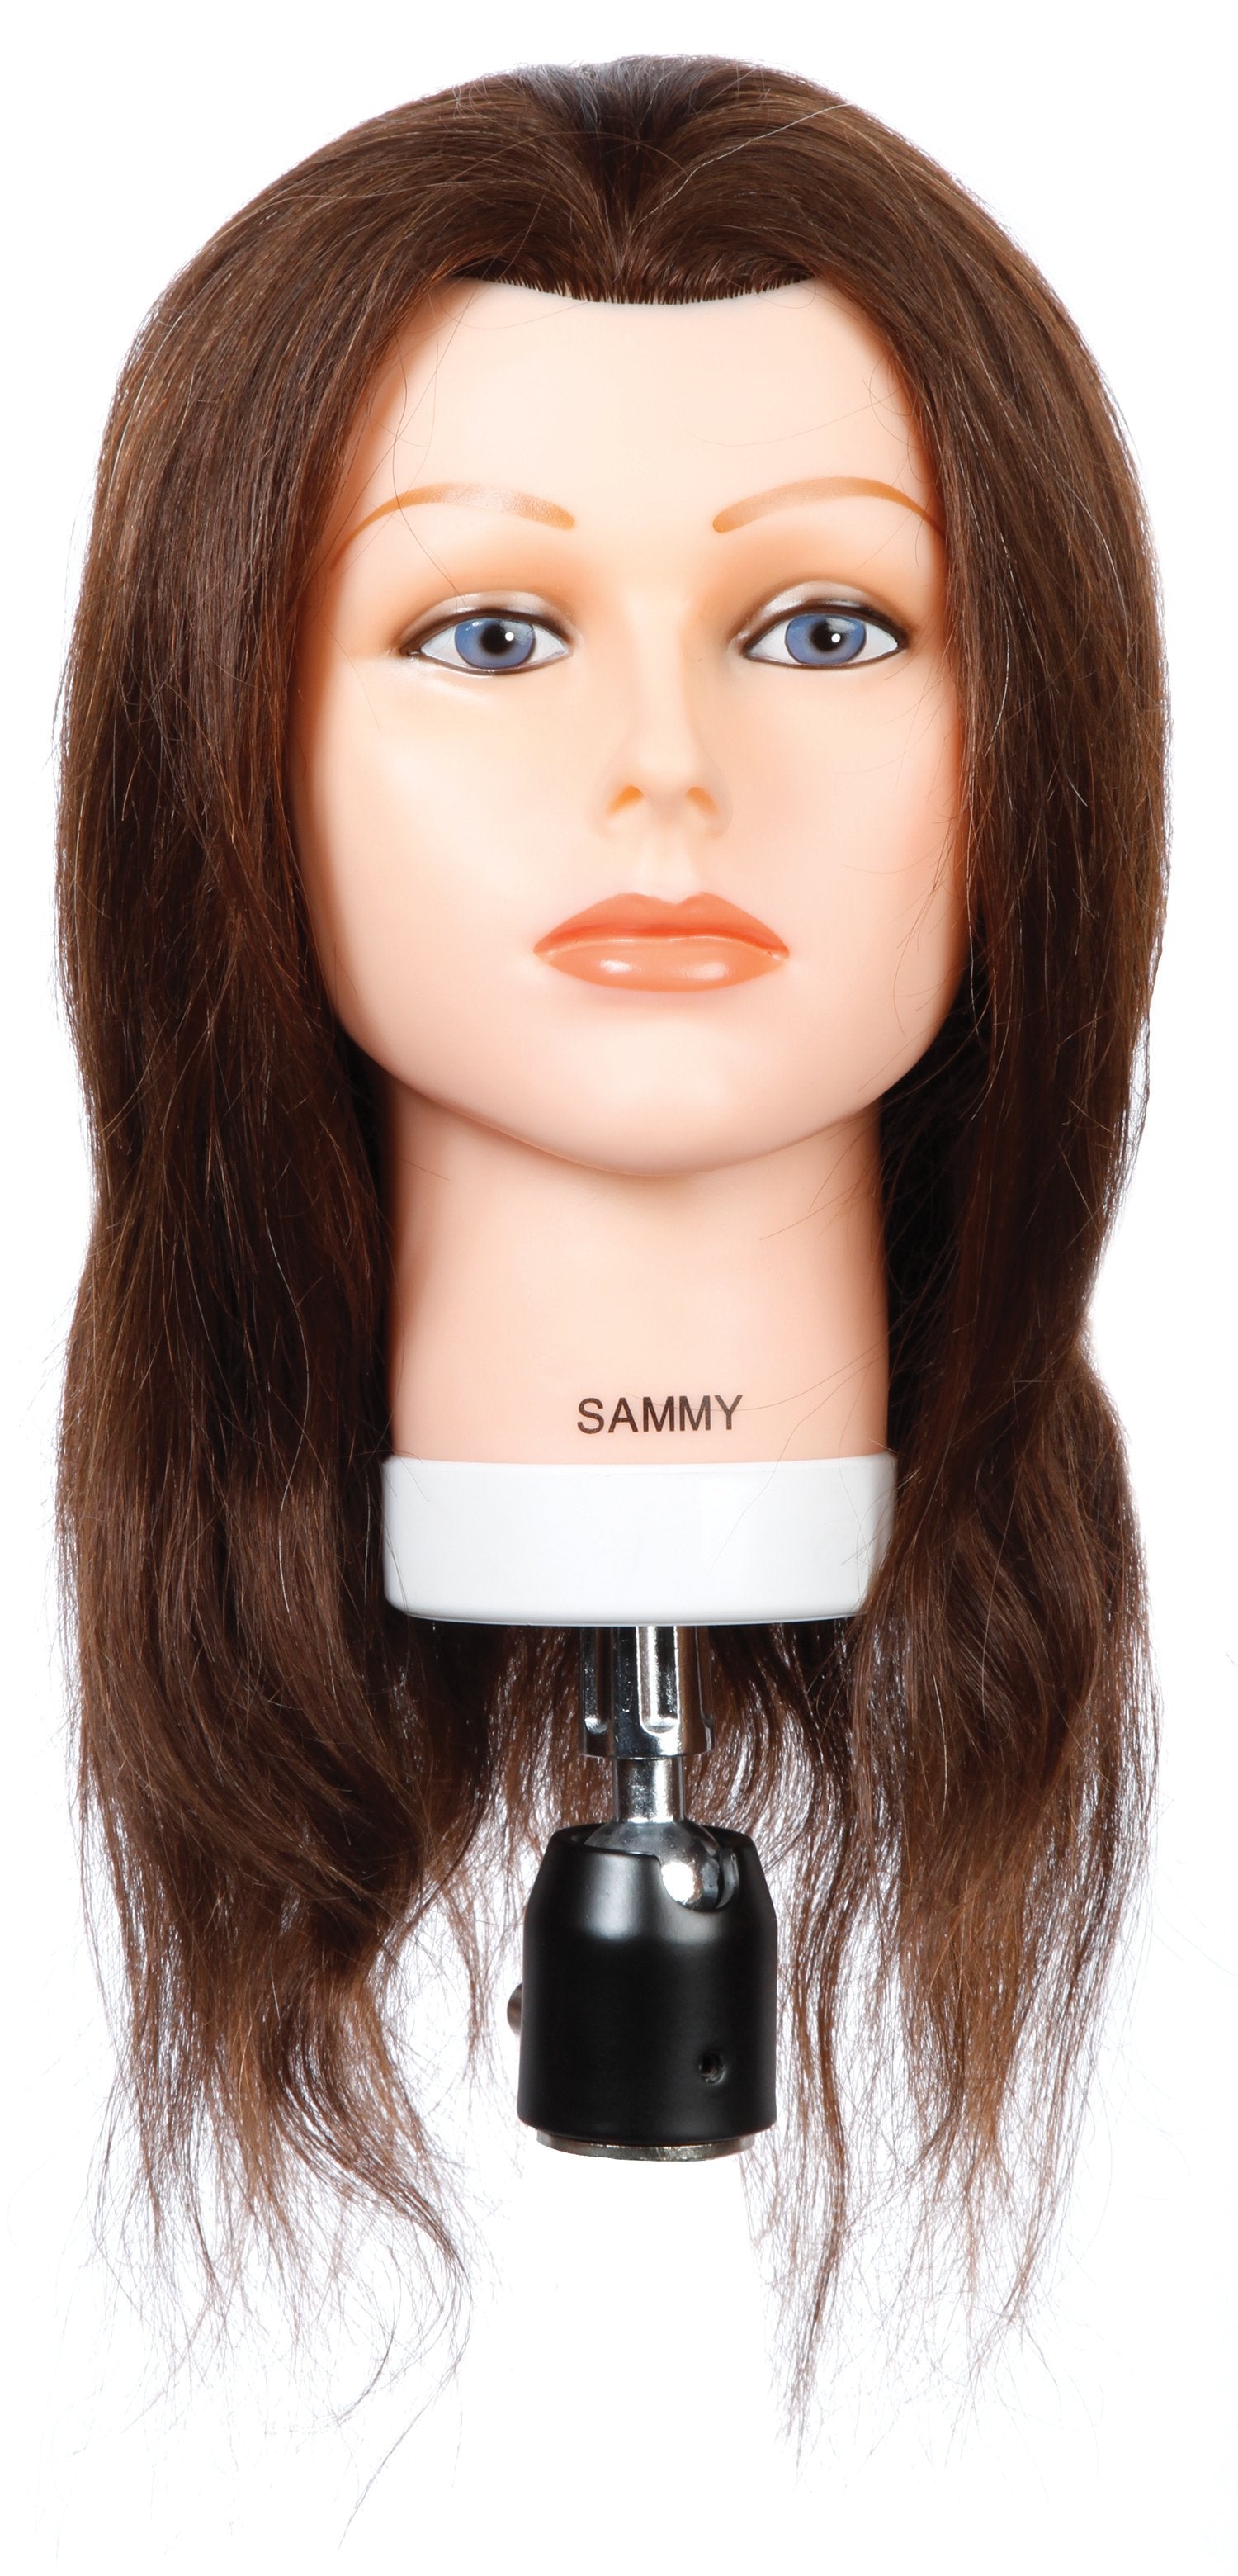 Sammy [100% Human Hair Mannequin]